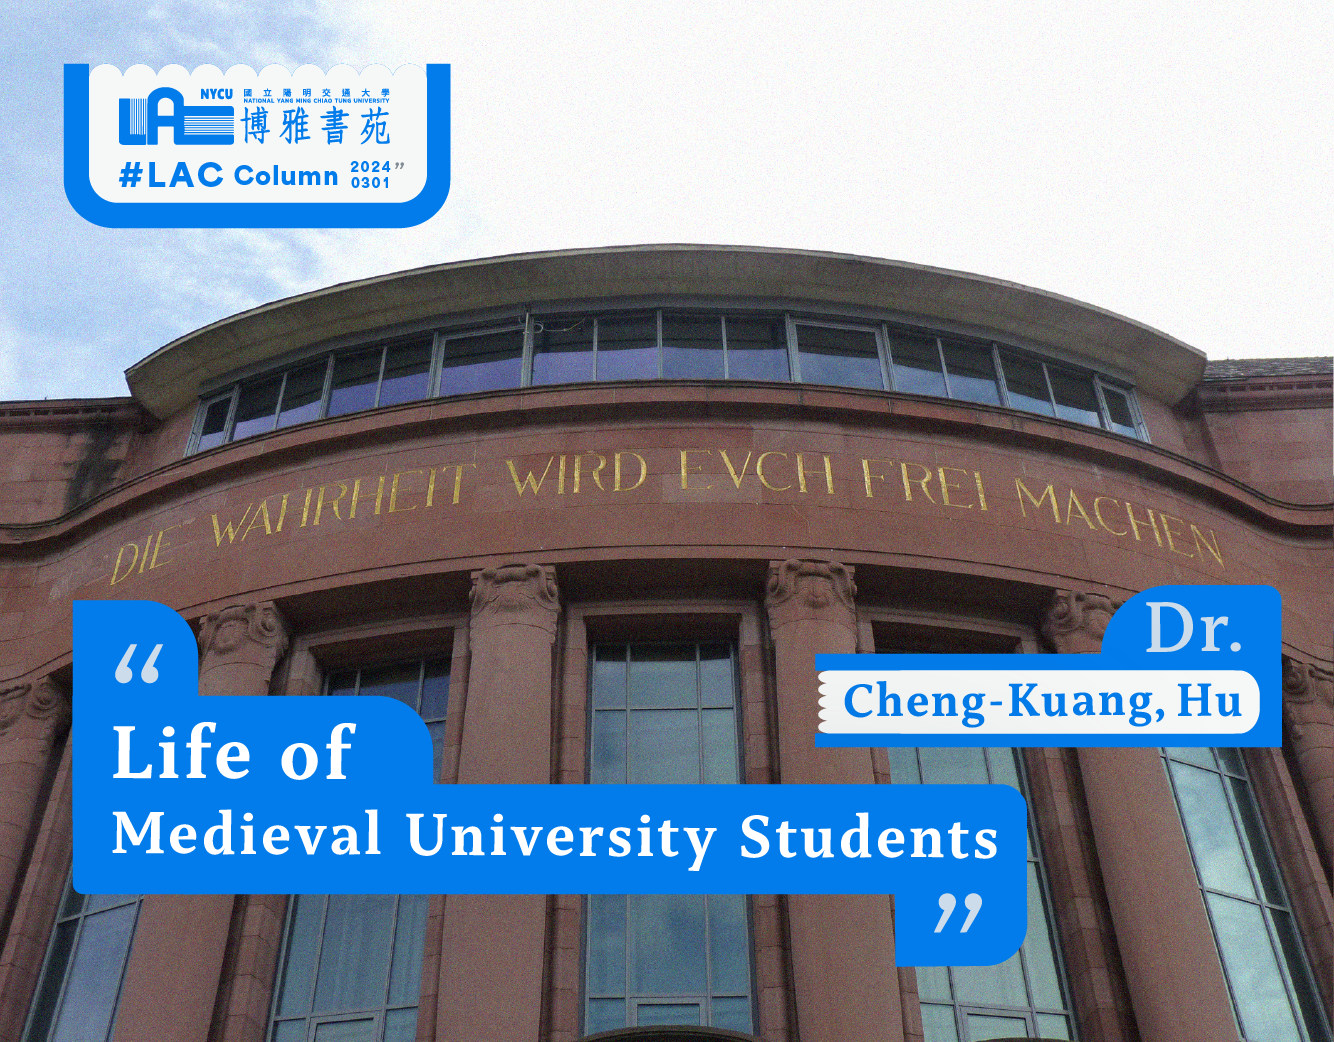 Life of Medieval University Students—Cheng-Kuang, Hu